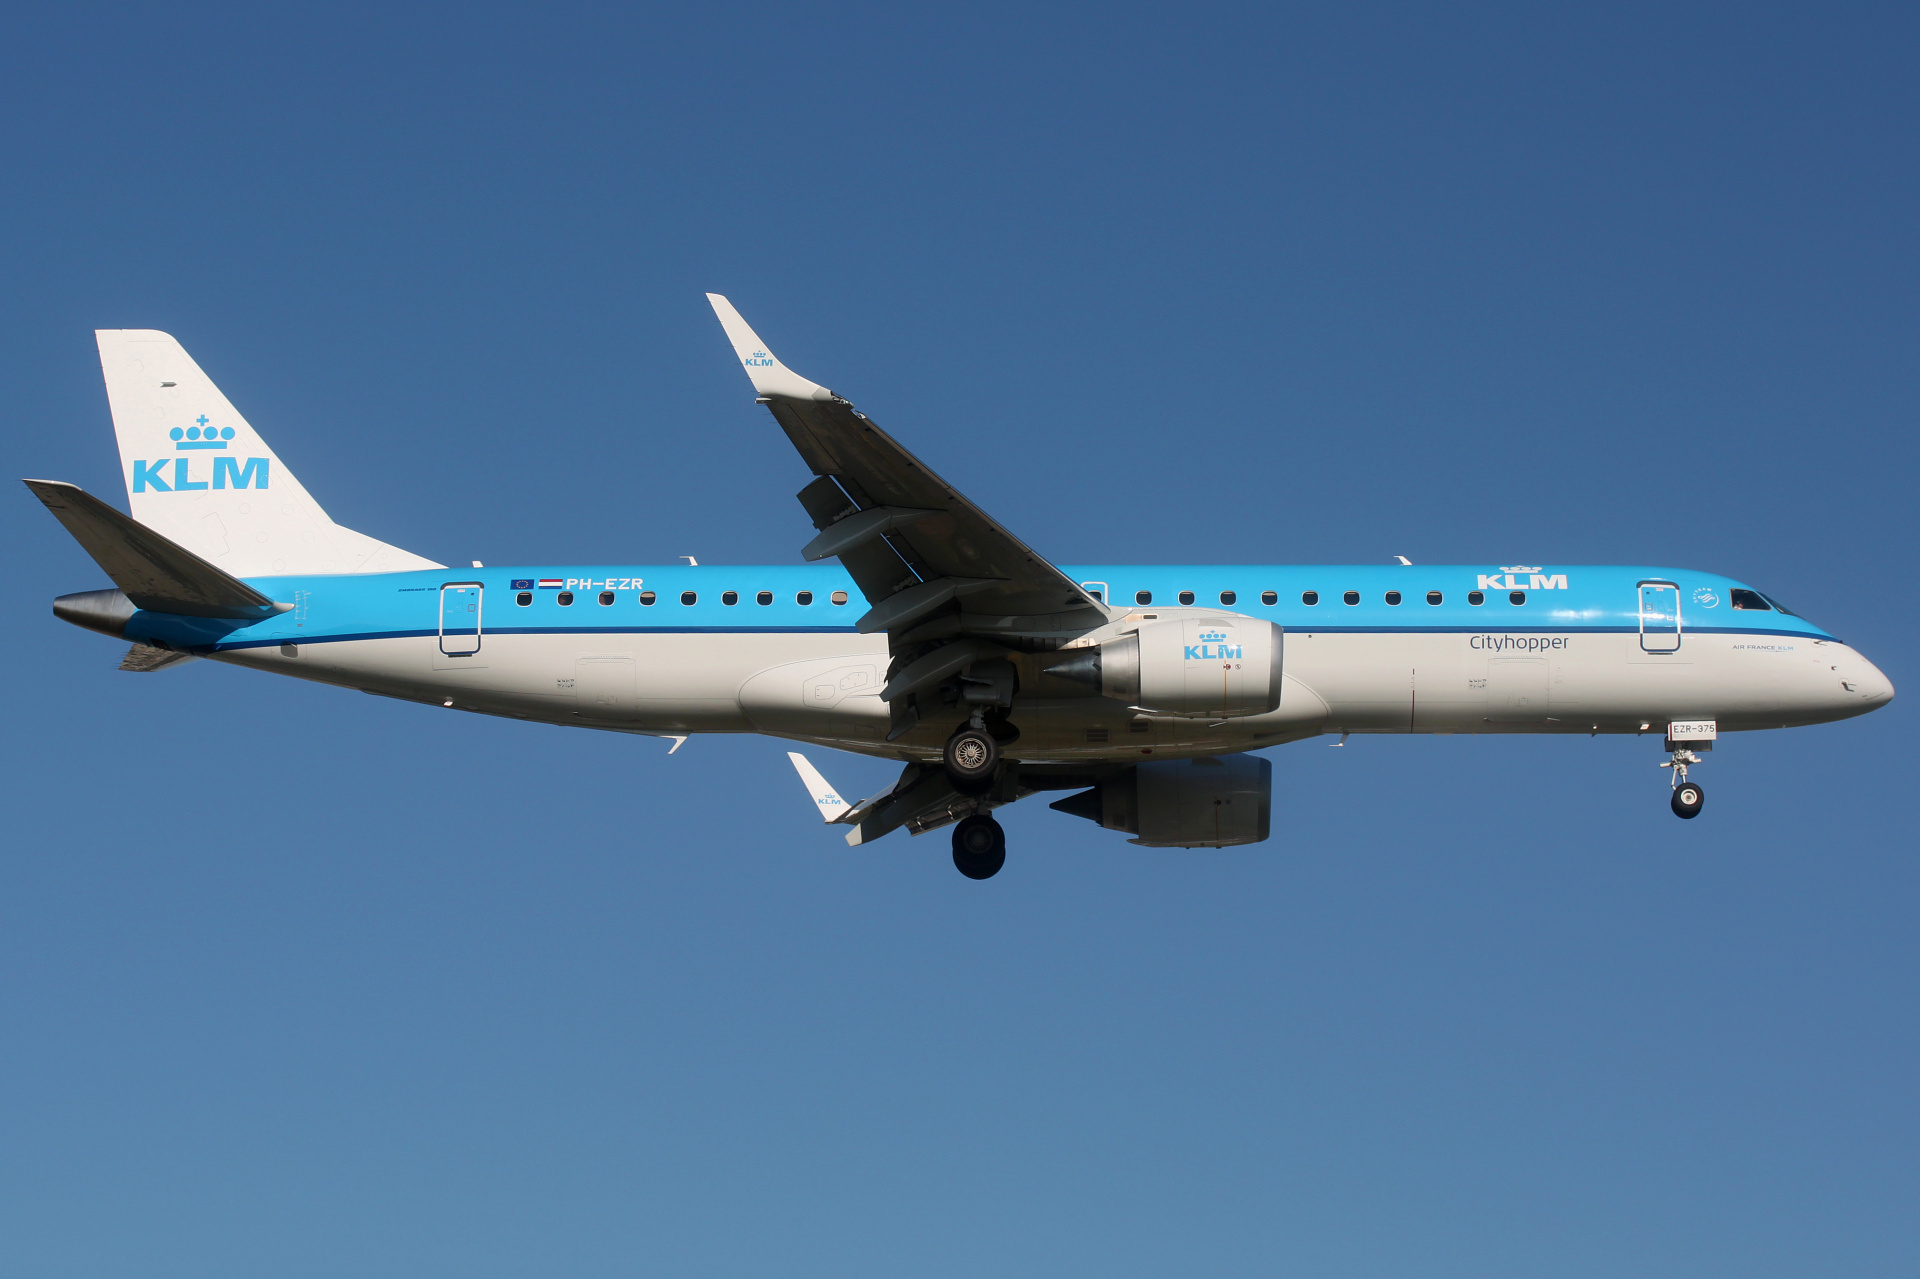 PH-EZR (Aircraft » EPWA Spotting » Embraer E190 » KLM Cityhopper)